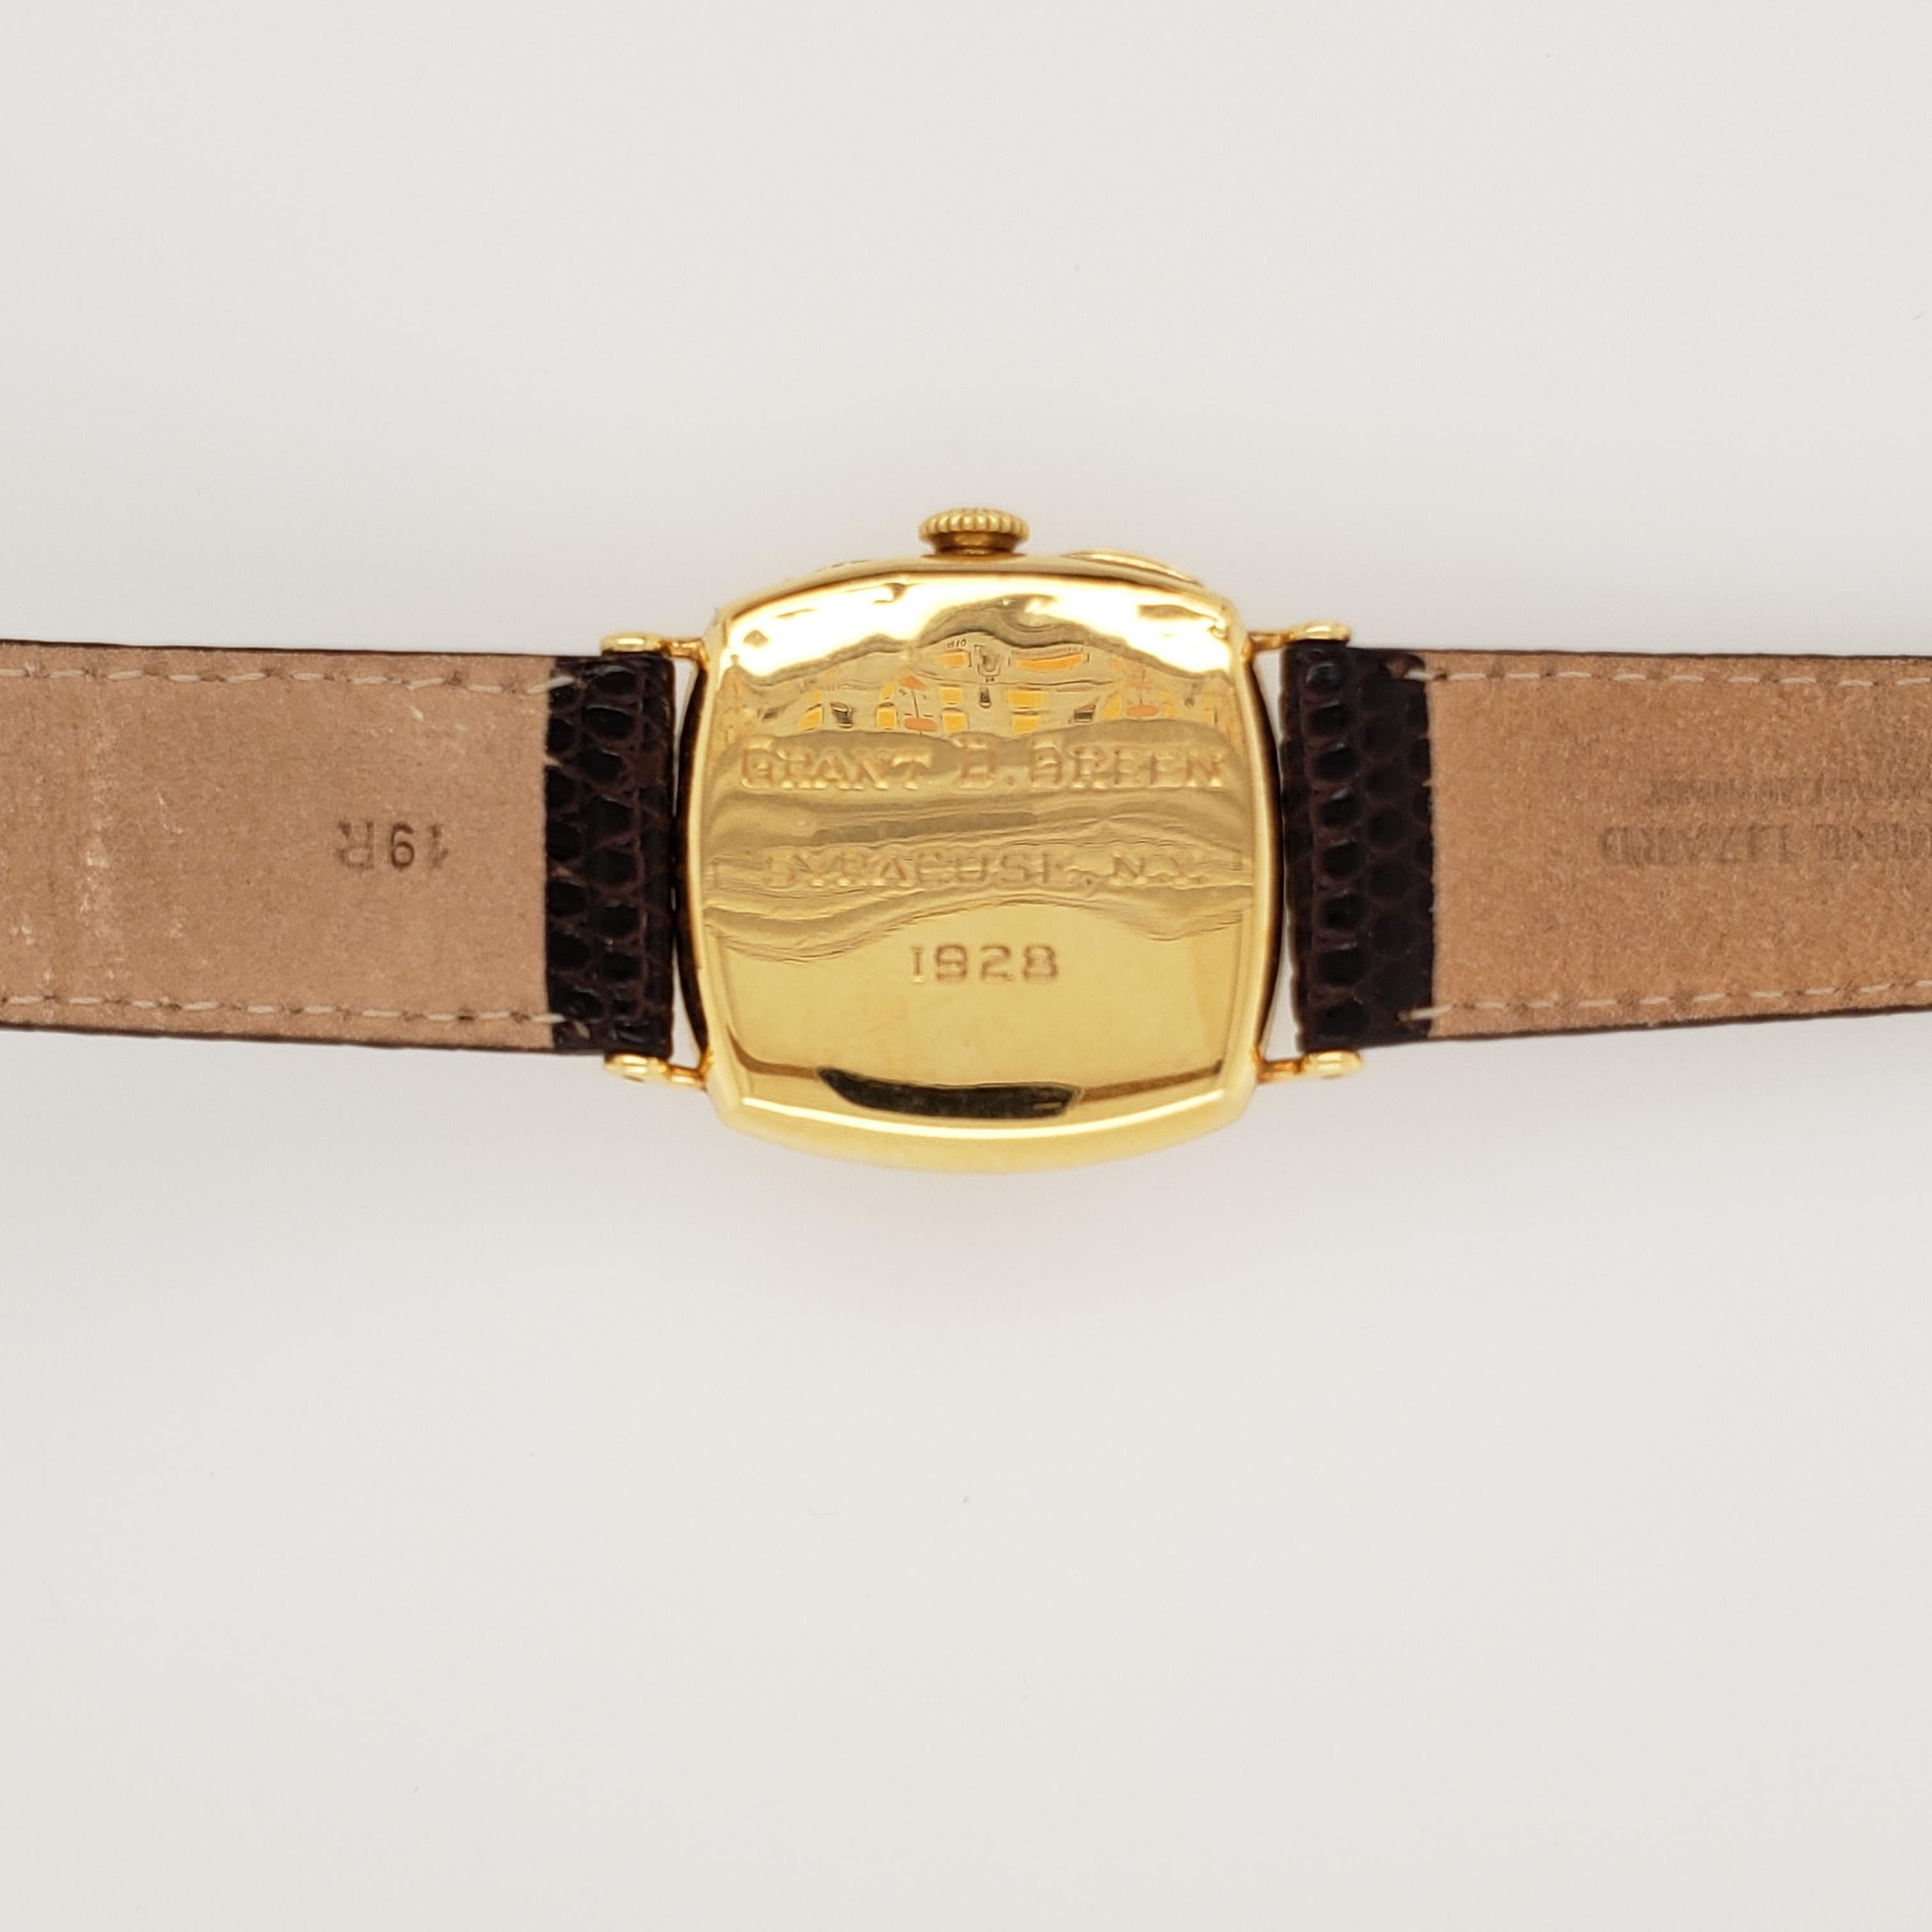 Diese Uhr hat ein vergoldetes Zifferblatt mit offenen arabischen Ziffern. 29mm kissenförmiges gewölbtes Gehäuse. Sekundenzeiger auf der Position 6. 15 Juwelenwerk.  Das Gehäuse:: das Zifferblatt und das Uhrwerk sind signiert. 
Referenznummer 816536.